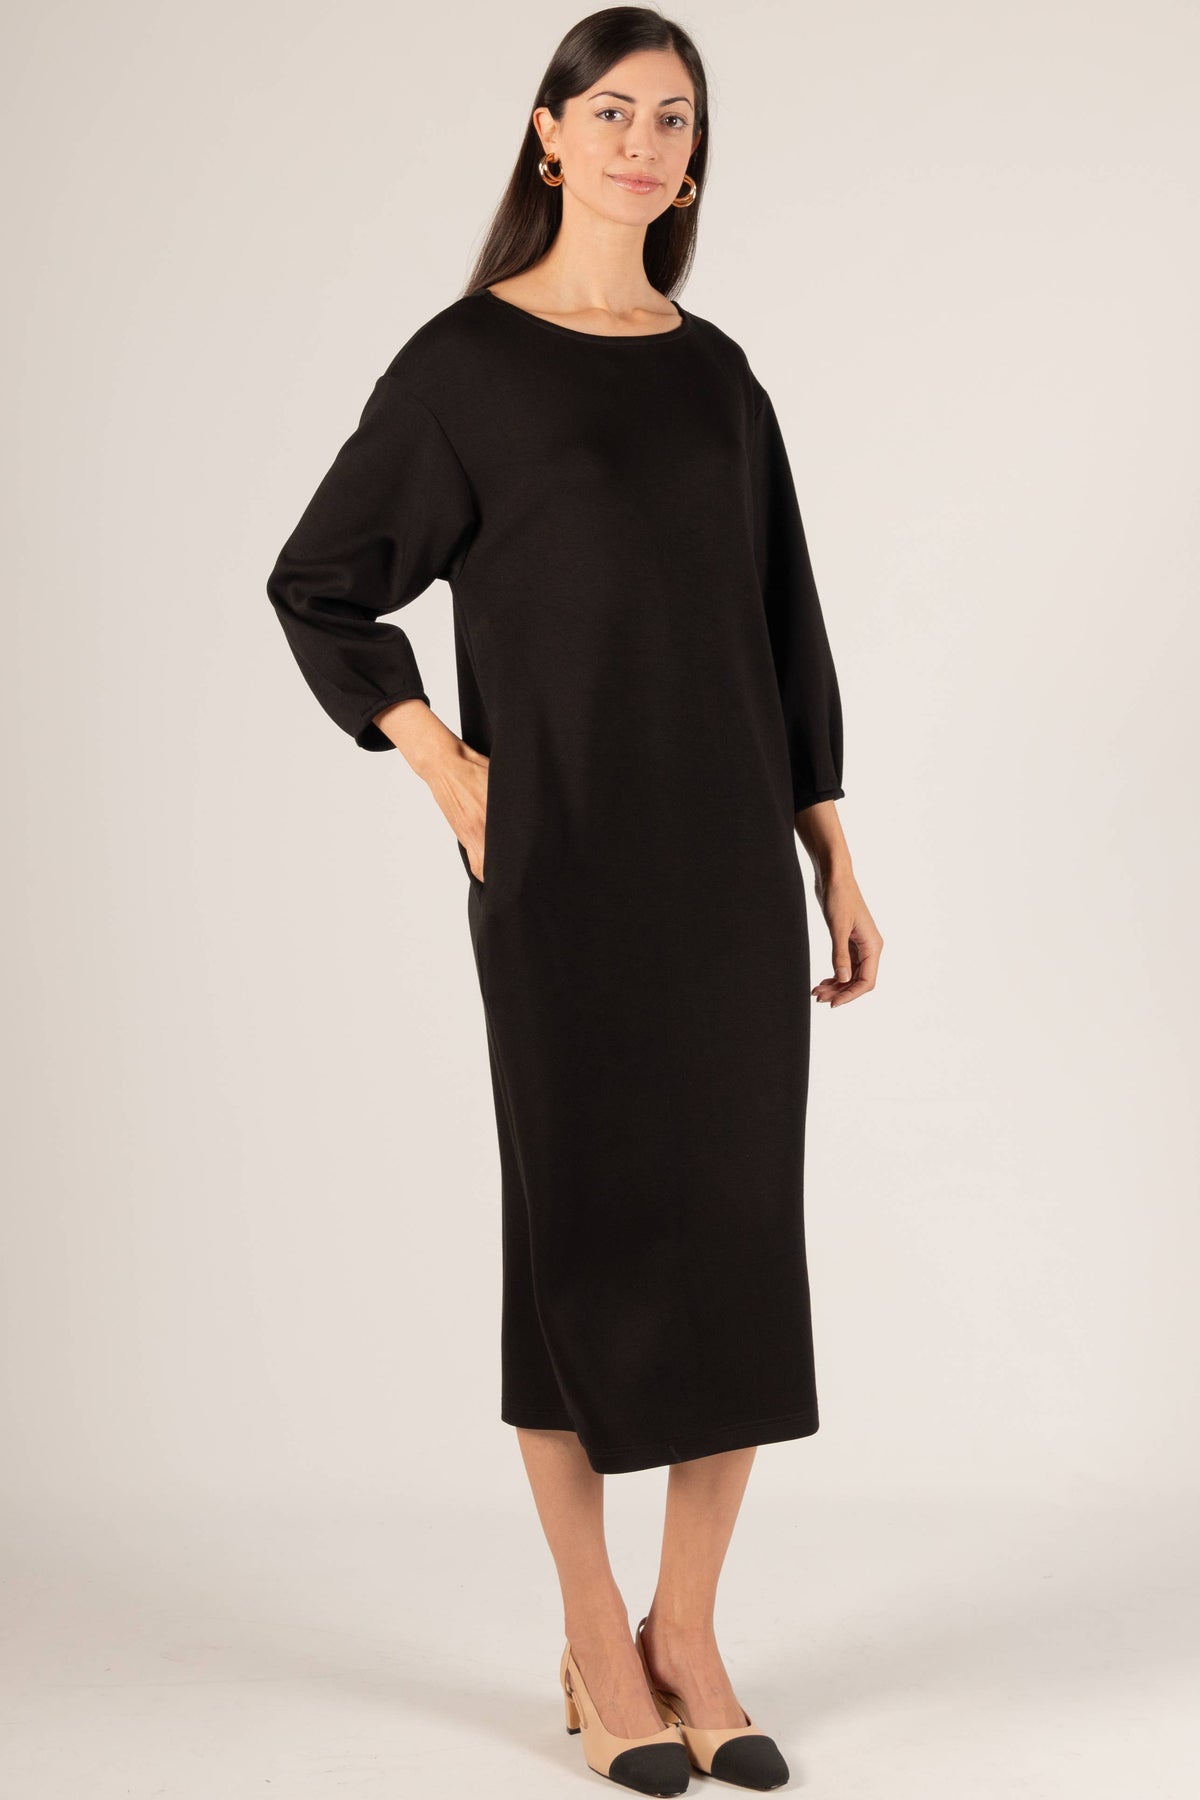 P. CILL Butter Modal Pintuck Sleeve Midi Dress:  Black